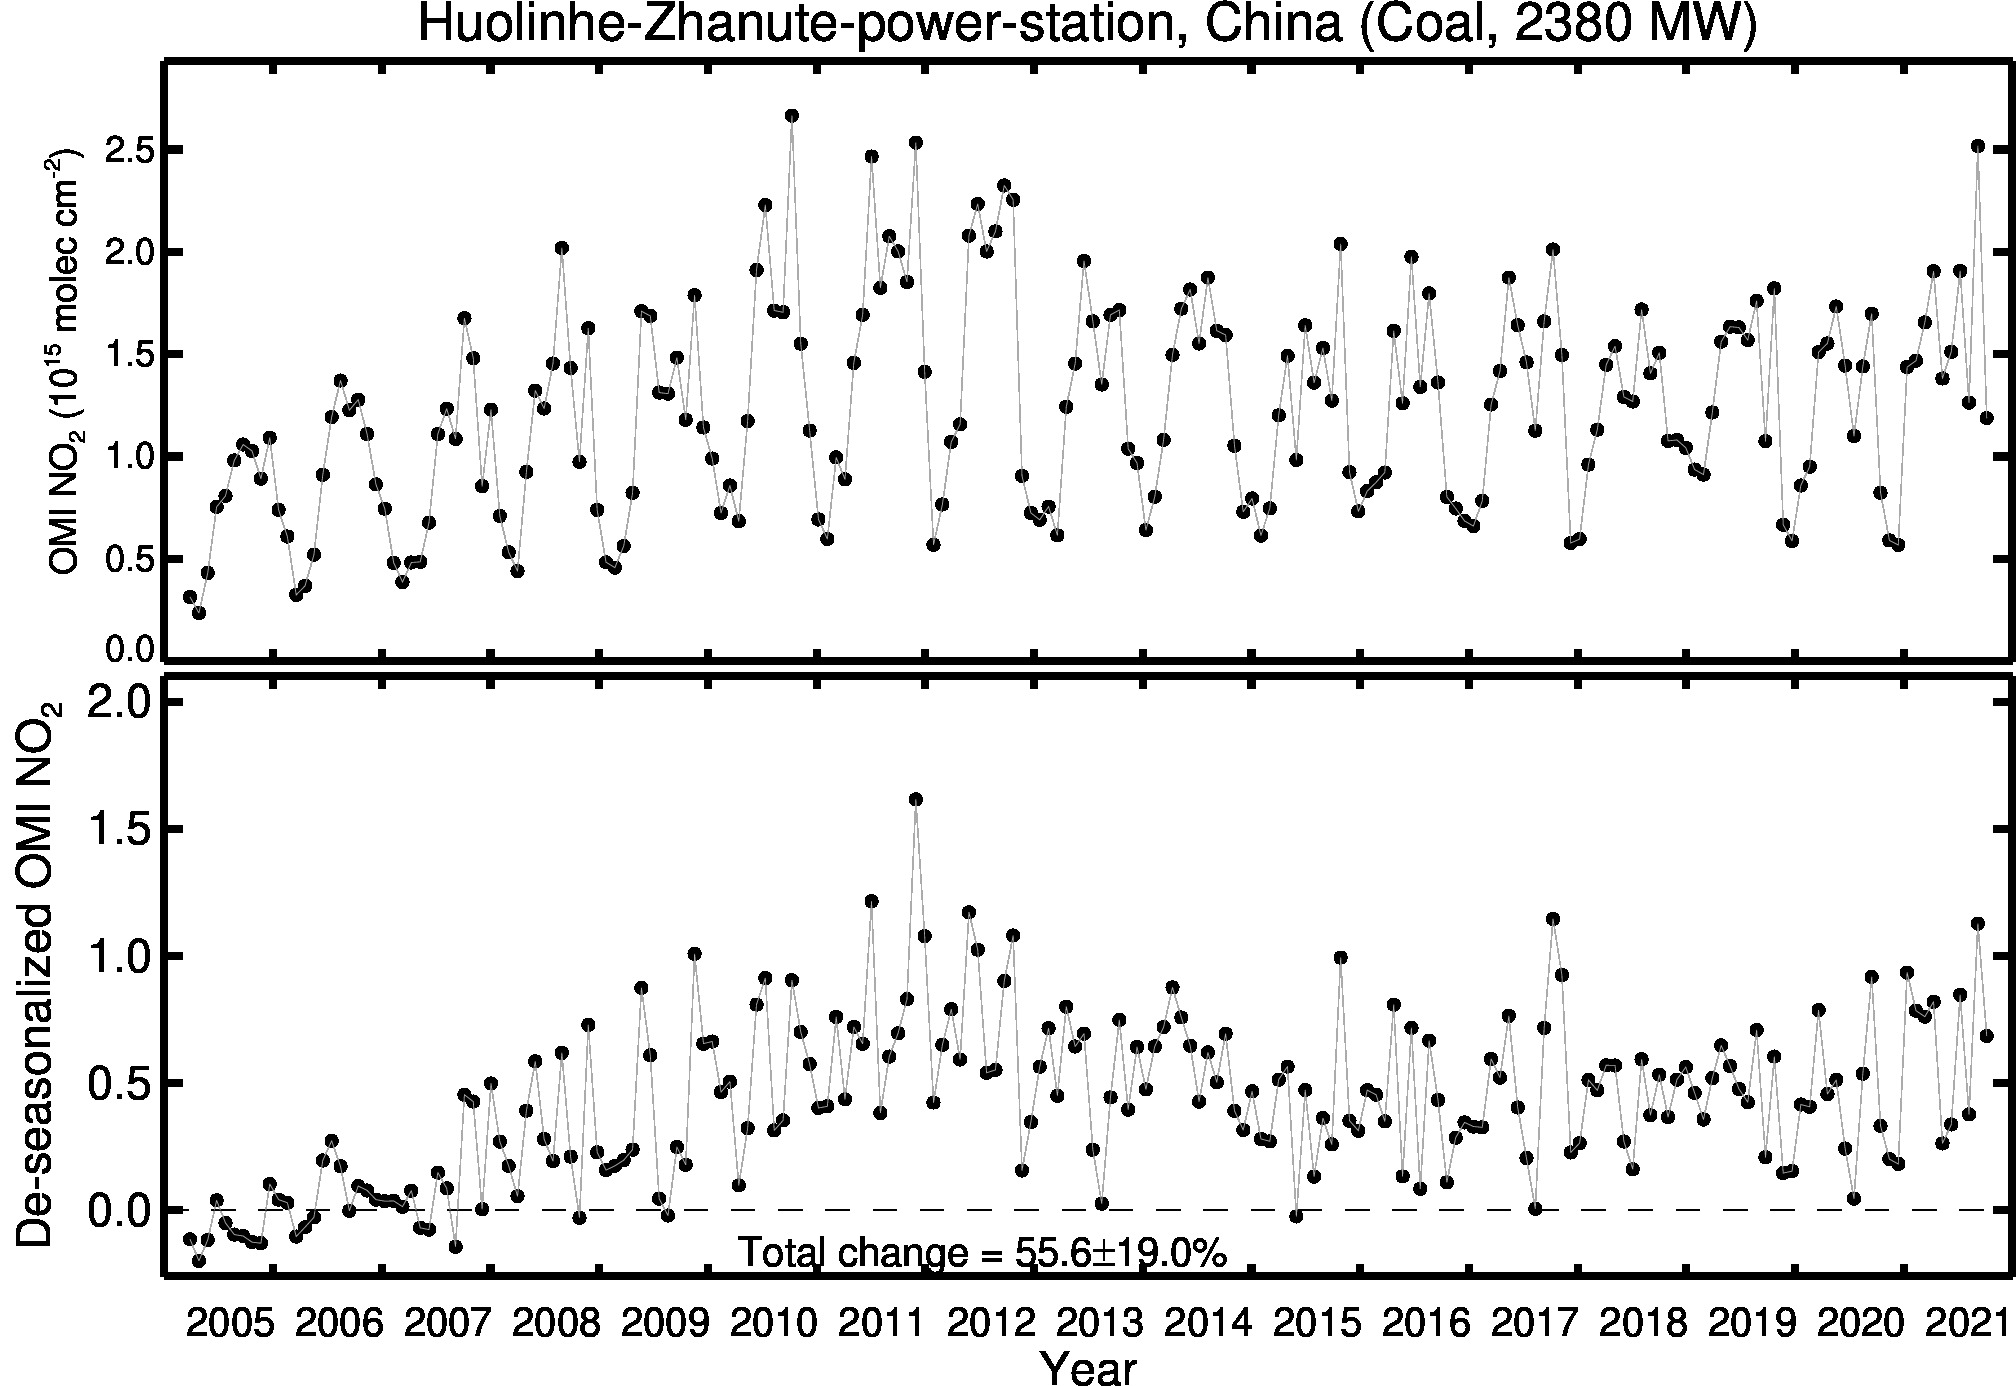 Huolinhe Zhanute power station Line Plot 2005-2021